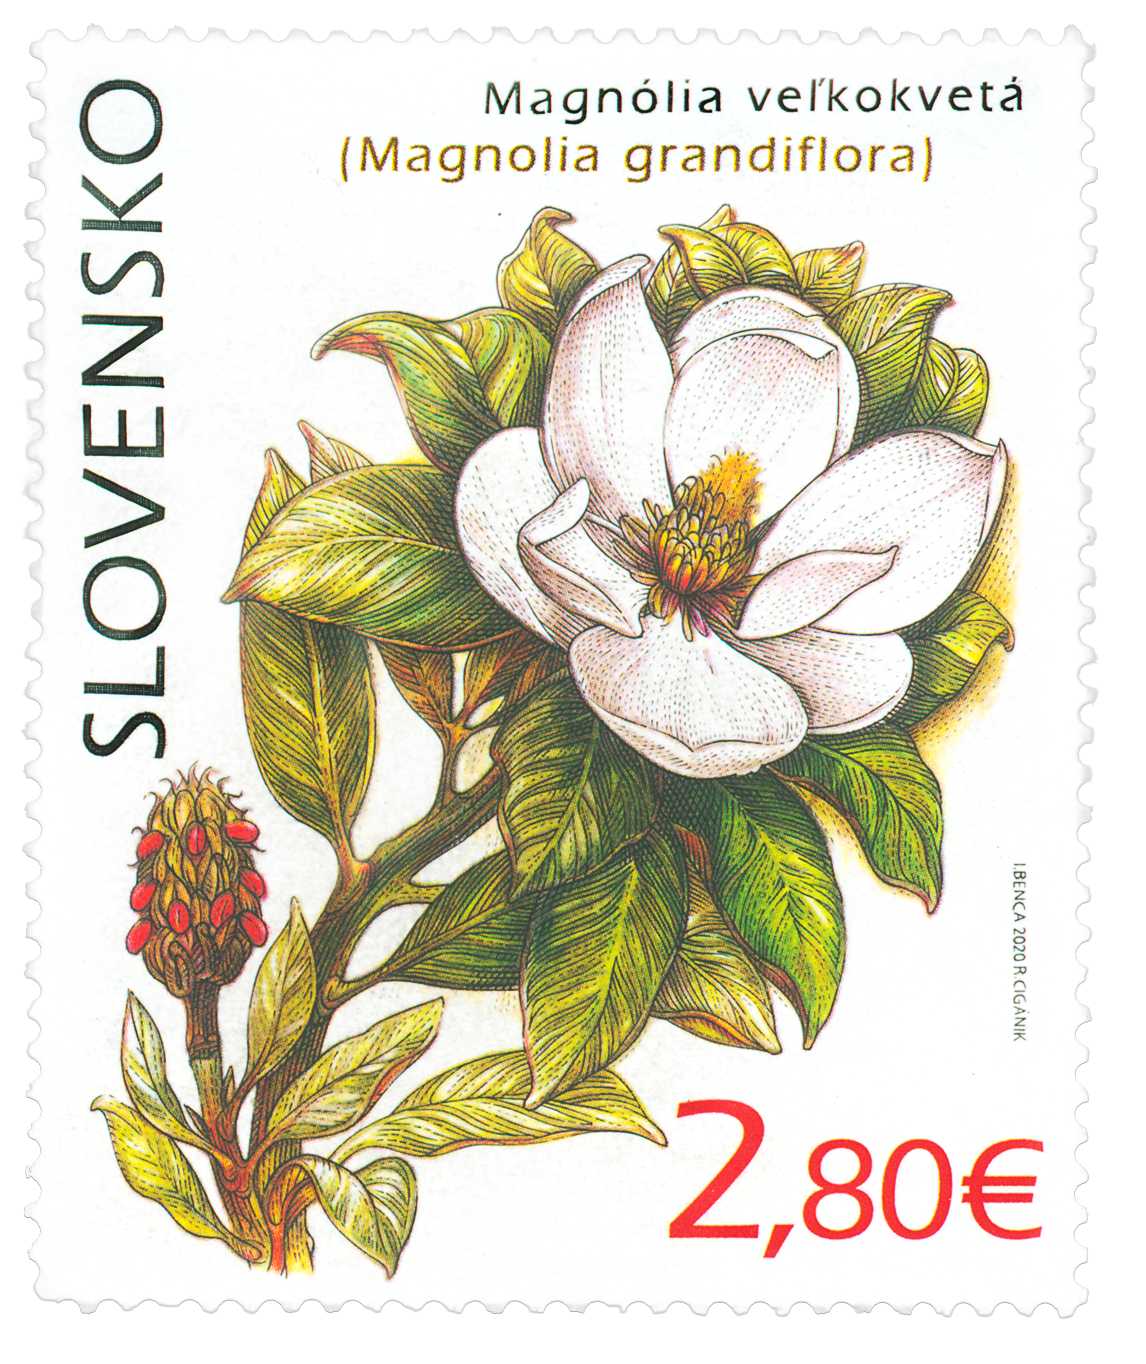 715 - Ochrana prírody: Botanická záhrada UPJŠ v Košiciach – magnólia veľkokvetá